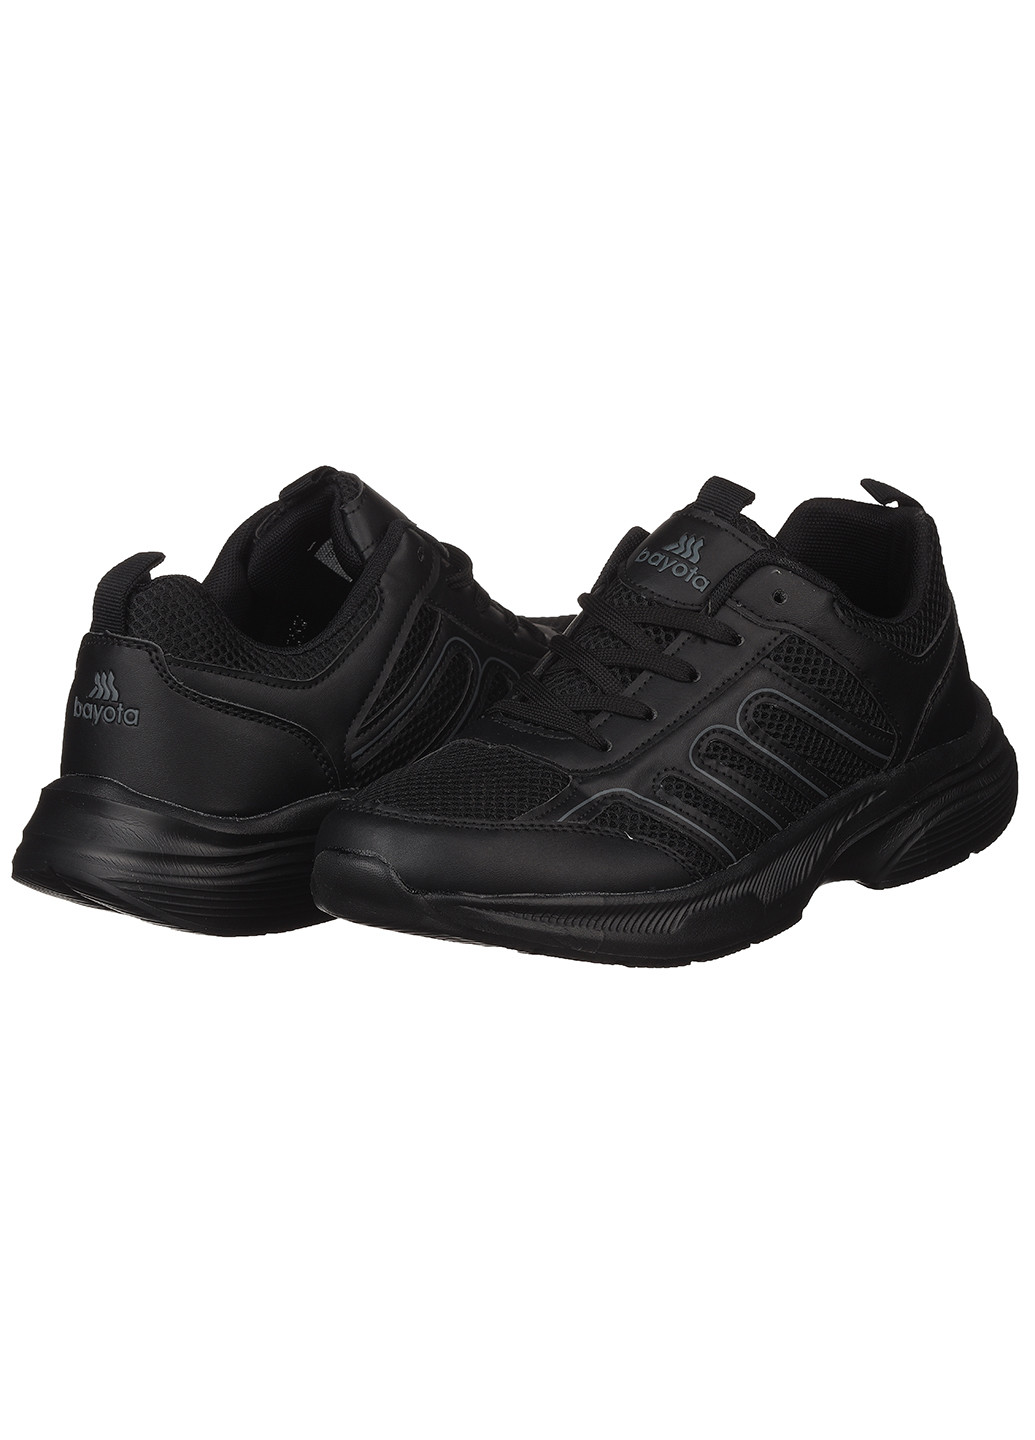 Черные демисезонные мужские кроссовки а5076-1 Bayota